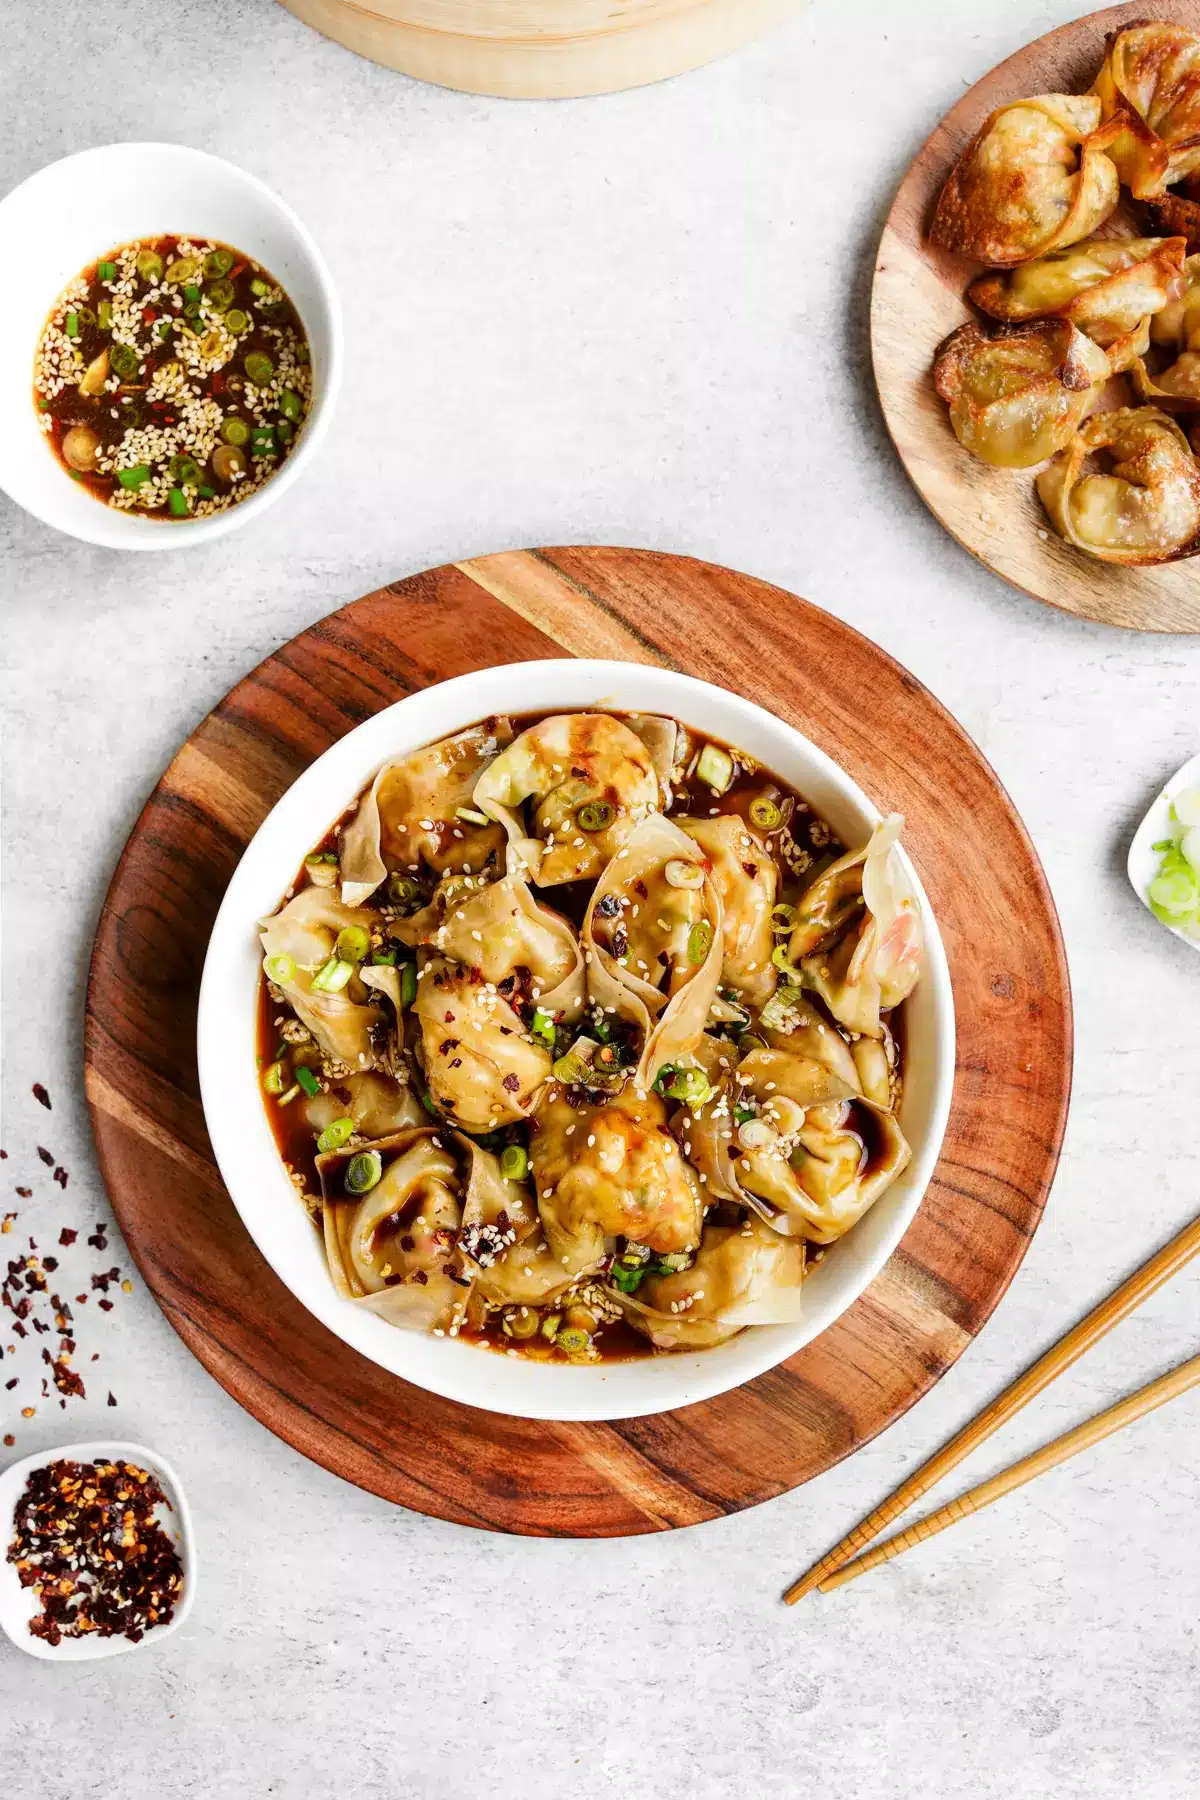 Chinese vegan dumplings in a bowl.